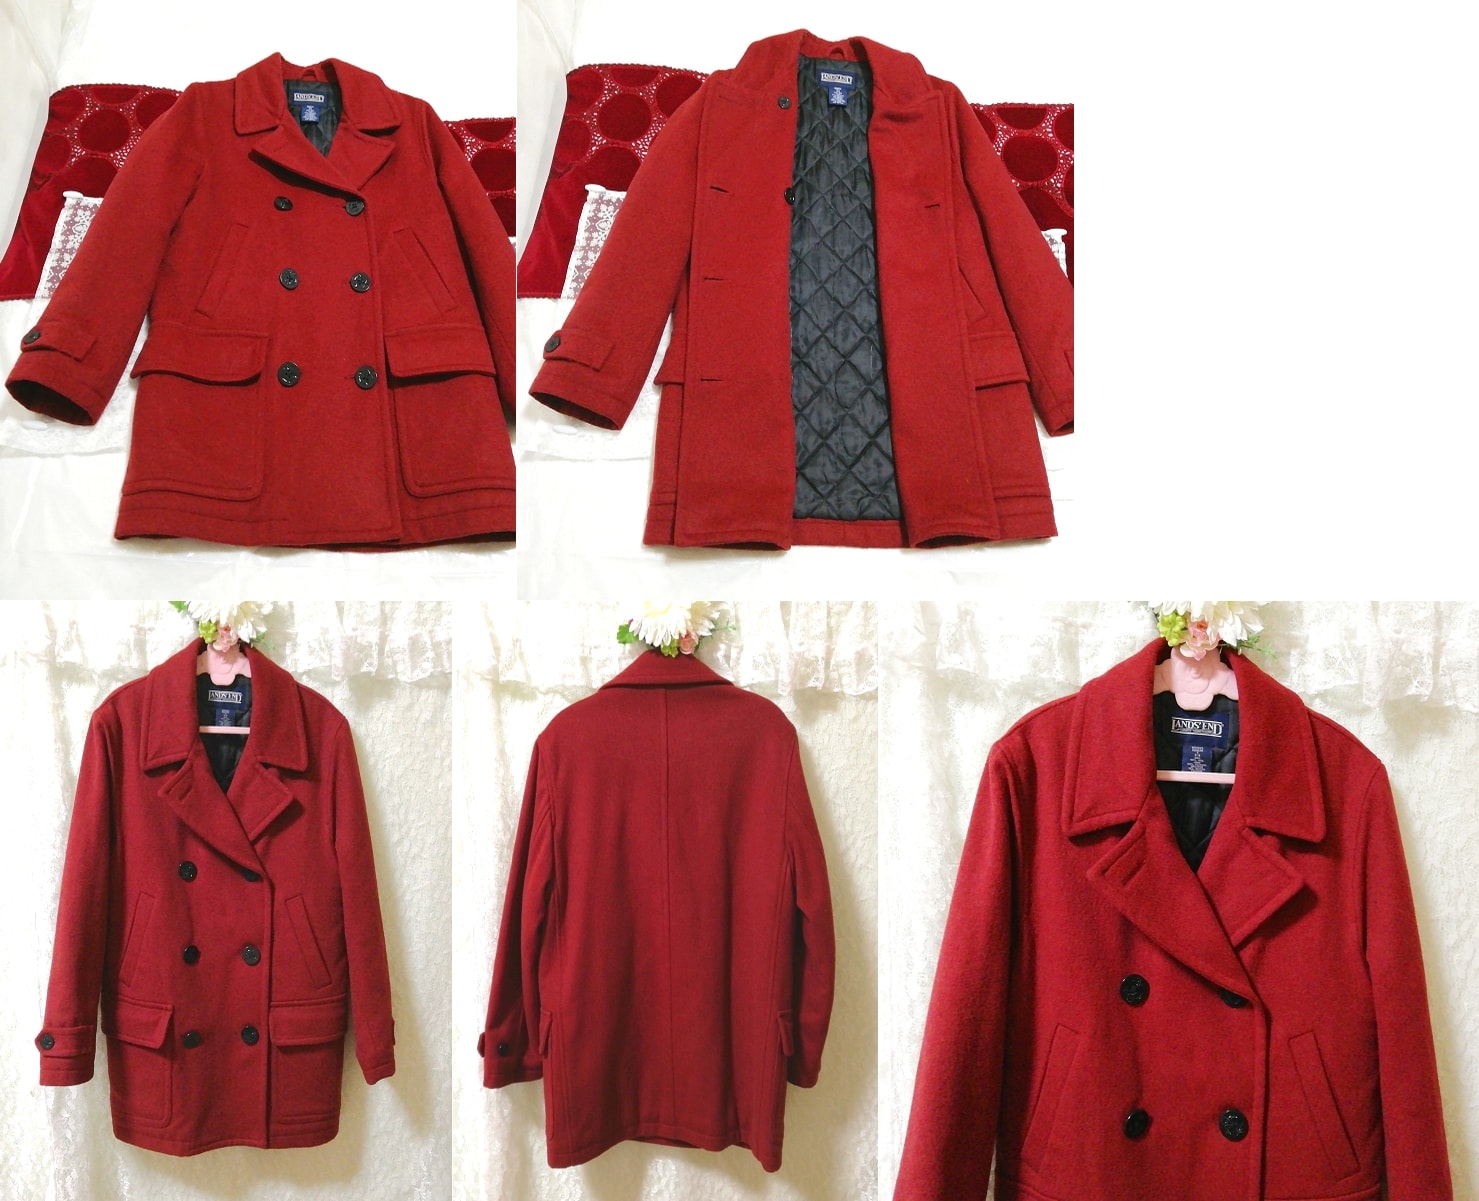 معطف بدلة أحمر من الصوف البكر من الصوف البكر باللون الأحمر الأرجواني والنبيذ الأحمر من Lands'end, معطف, معطف بشكل عام, حجم م